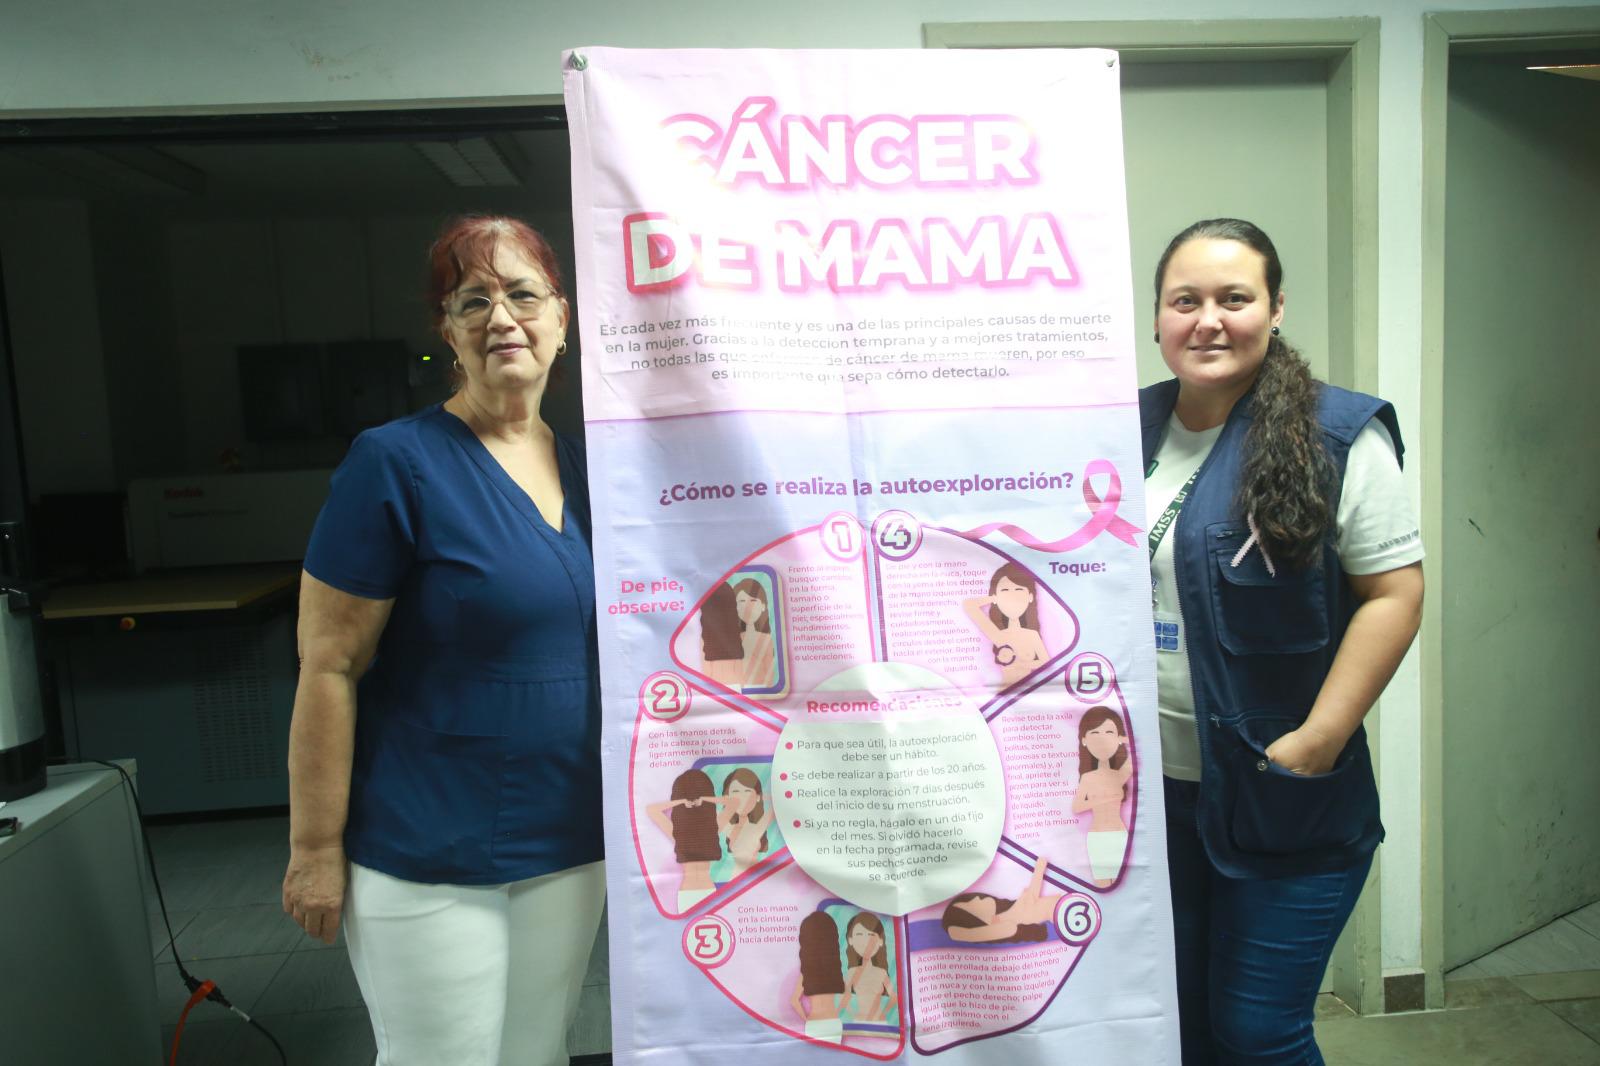 $!Las trabajadoras sociales Martha Torres y Lizeth Pandeli Torres, impartieron la conferencia “Octubre mes de la sensibilización” en las instalaciones de Noroeste.